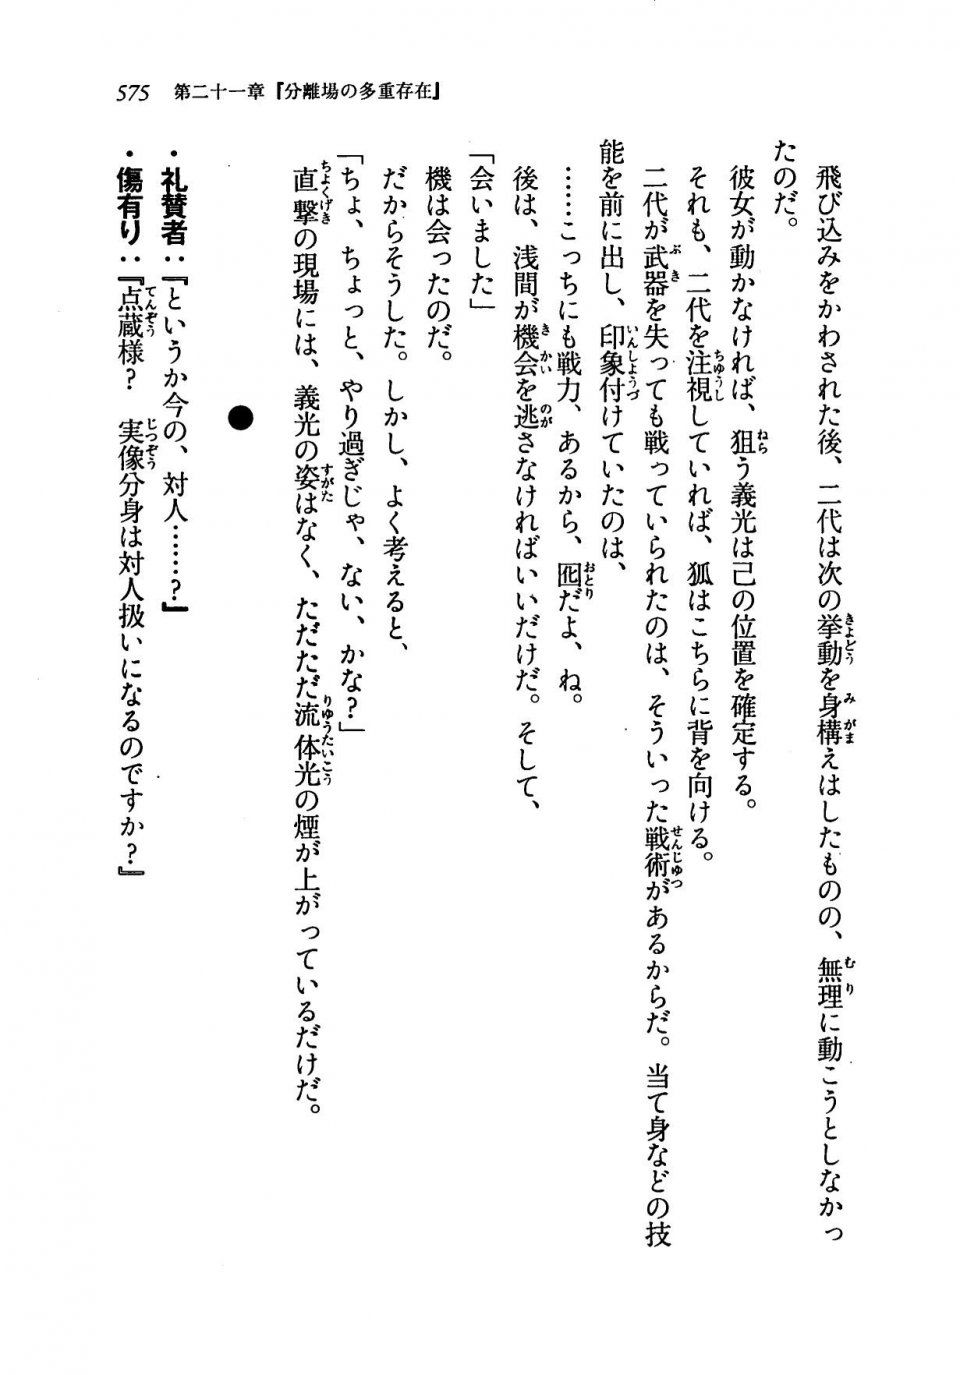 Kyoukai Senjou no Horizon LN Vol 19(8A) - Photo #575